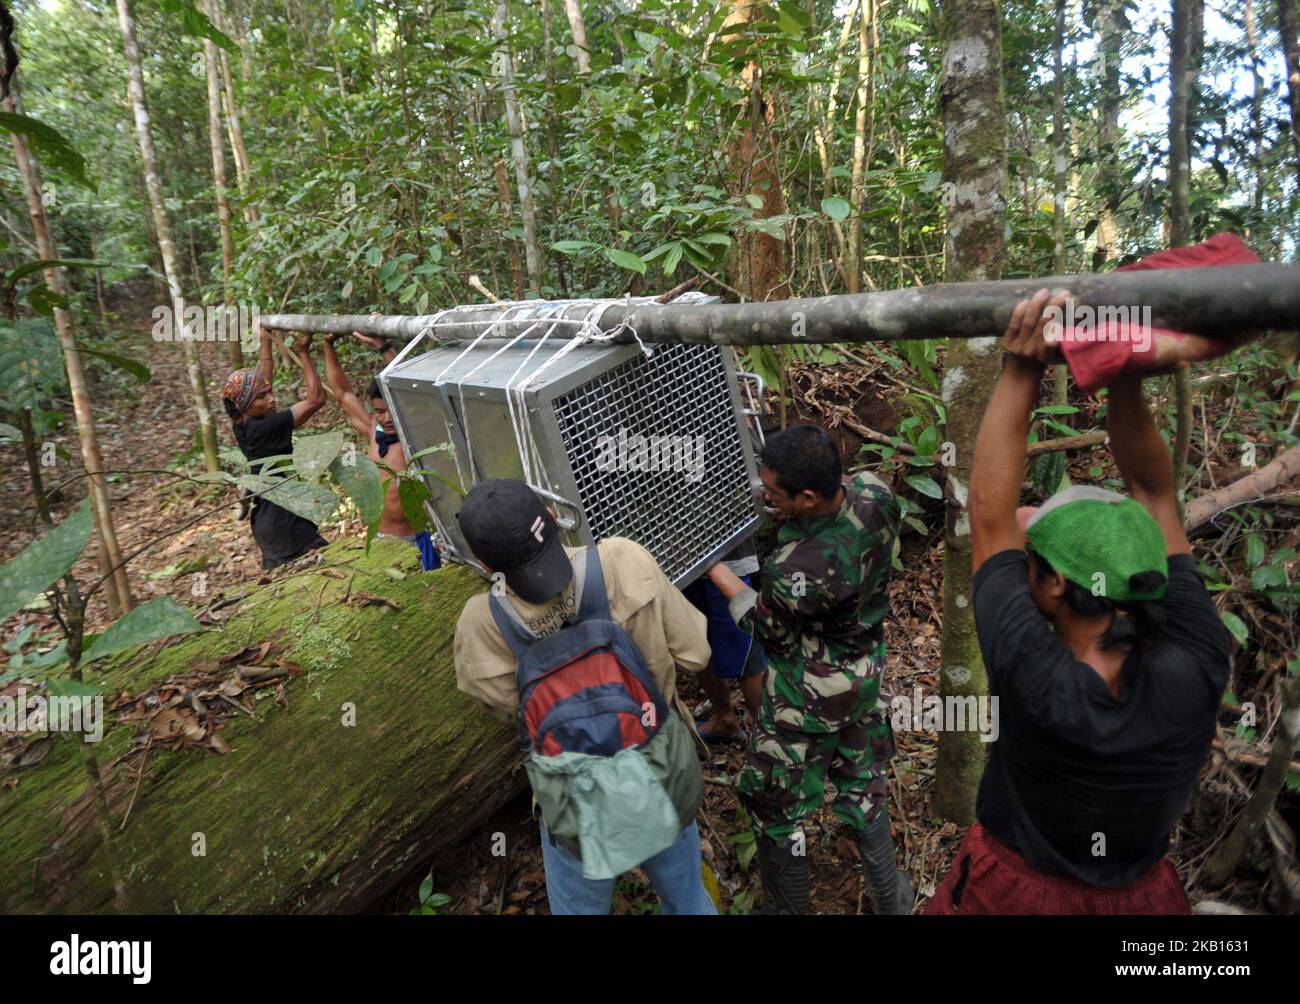 Insieme a residenti e parti correlate portare una gabbia contenente Orangutan nel Bukit Baka Bukit Raya Parco Nazionale il 12,2018 settembre. IAR (International Animal Rescue) insieme a BKSDA (Agenzia per la conservazione della natura Indonesia) Ketapang Regione 1 sezione conservazione e Bukit Baka Bukit Raya Parco Nazionale rilascio di 4 Orangutani conservazione. Quattro orangutani liberati sono stati vittime del commercio illegale di nome Ongki e mantenuti illegalmente da residenti di nome Rambo, Kepo, Ami loro orangutani adolescenti. Gli orangutani escono sugli alberi e salgono fino in cima al rilascio dell'orangutano nella foresta di Foto Stock